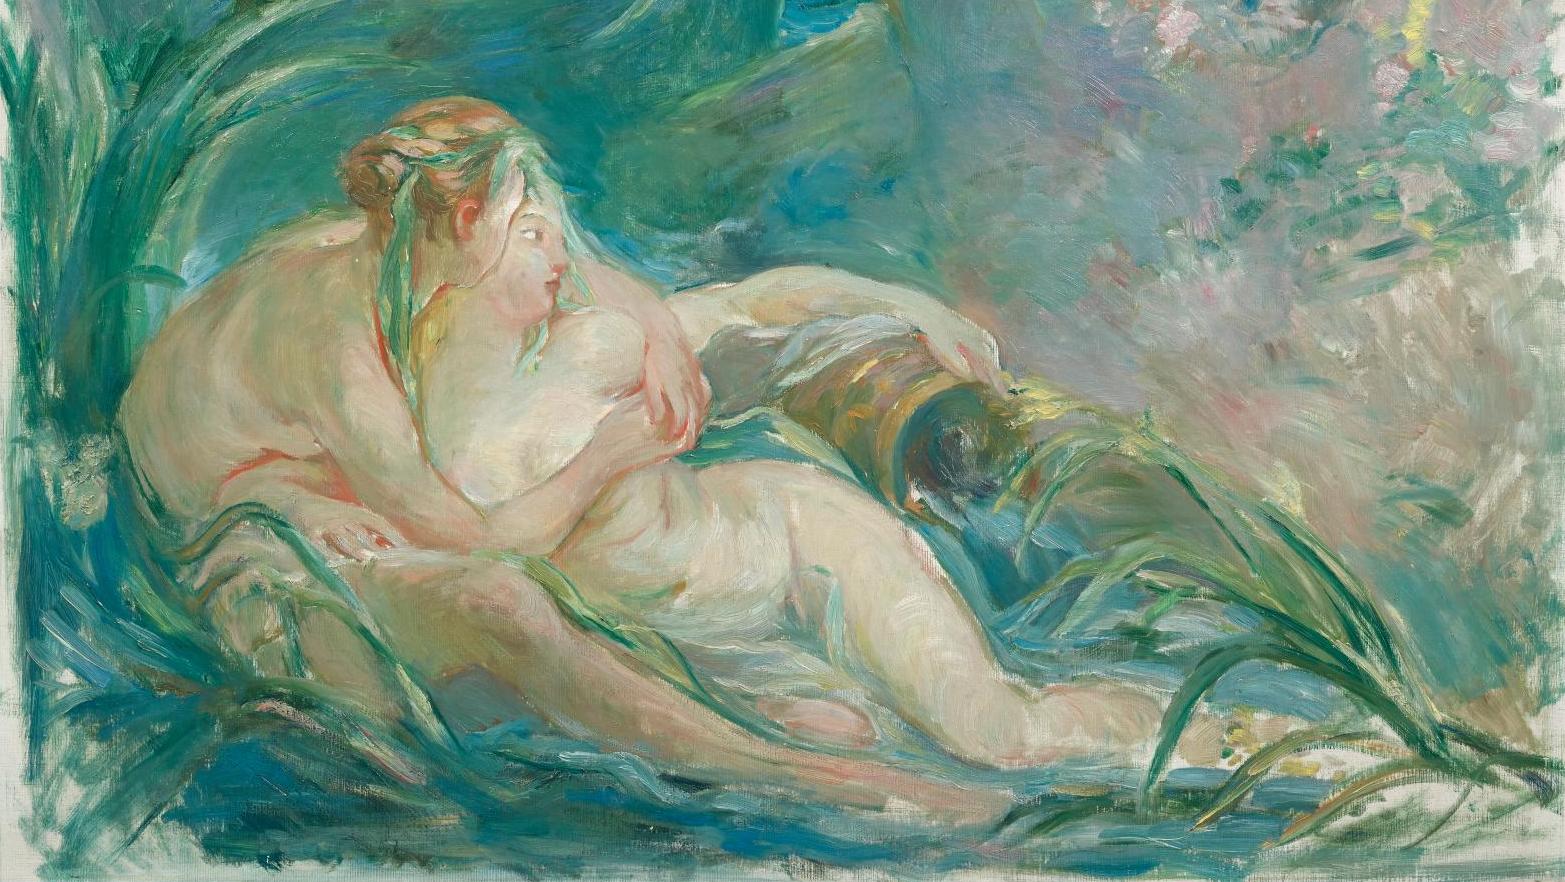 Berthe Morisot (1841-1895), d’après François Boucher, Apollon révélant sa divinité... Berthe Morisot et le XVIIIe siècle à Marmottan